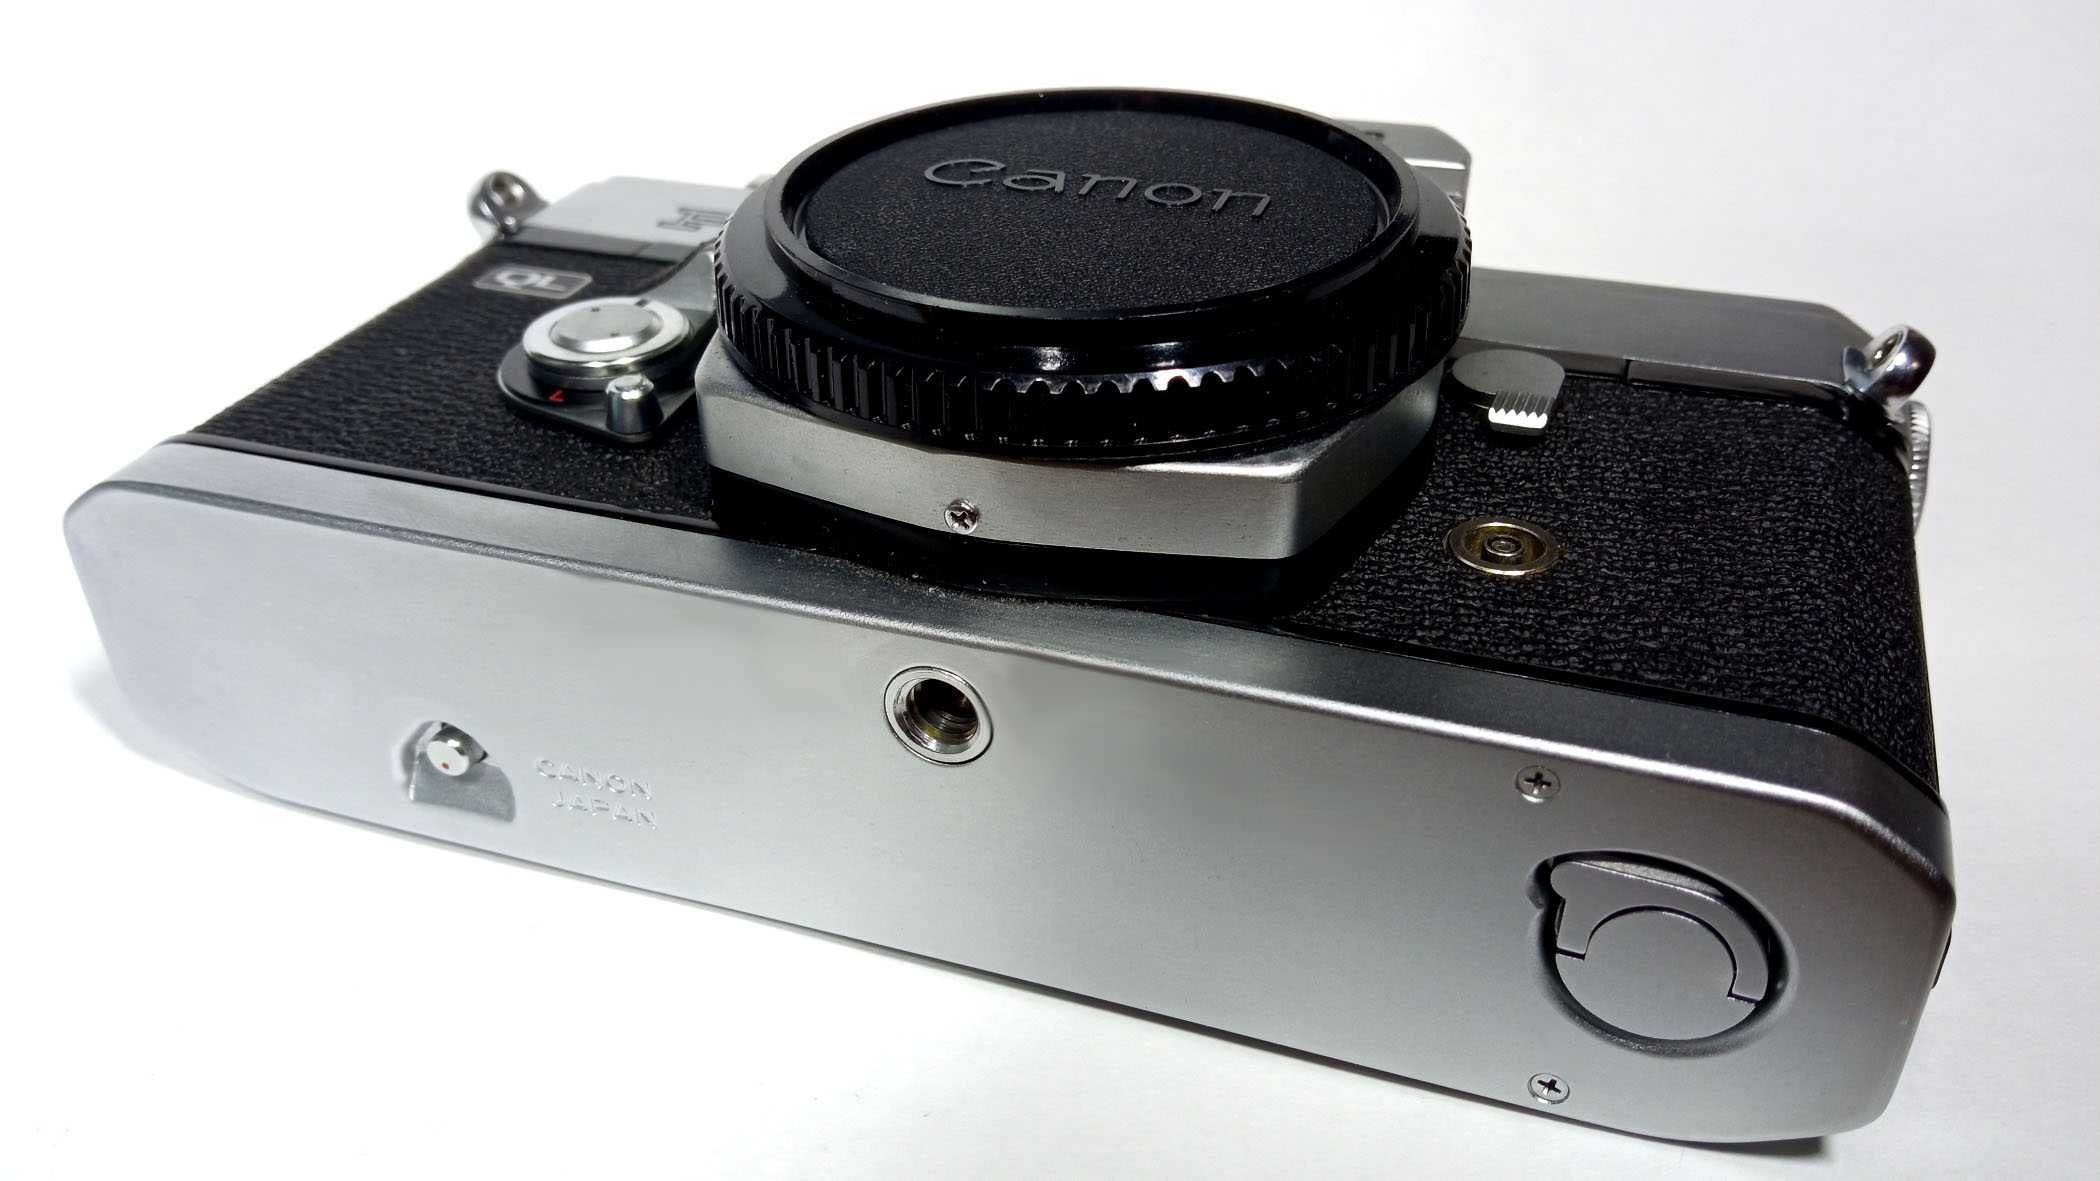 Плівковий Canon FT QL чиста механіка, стан як новий